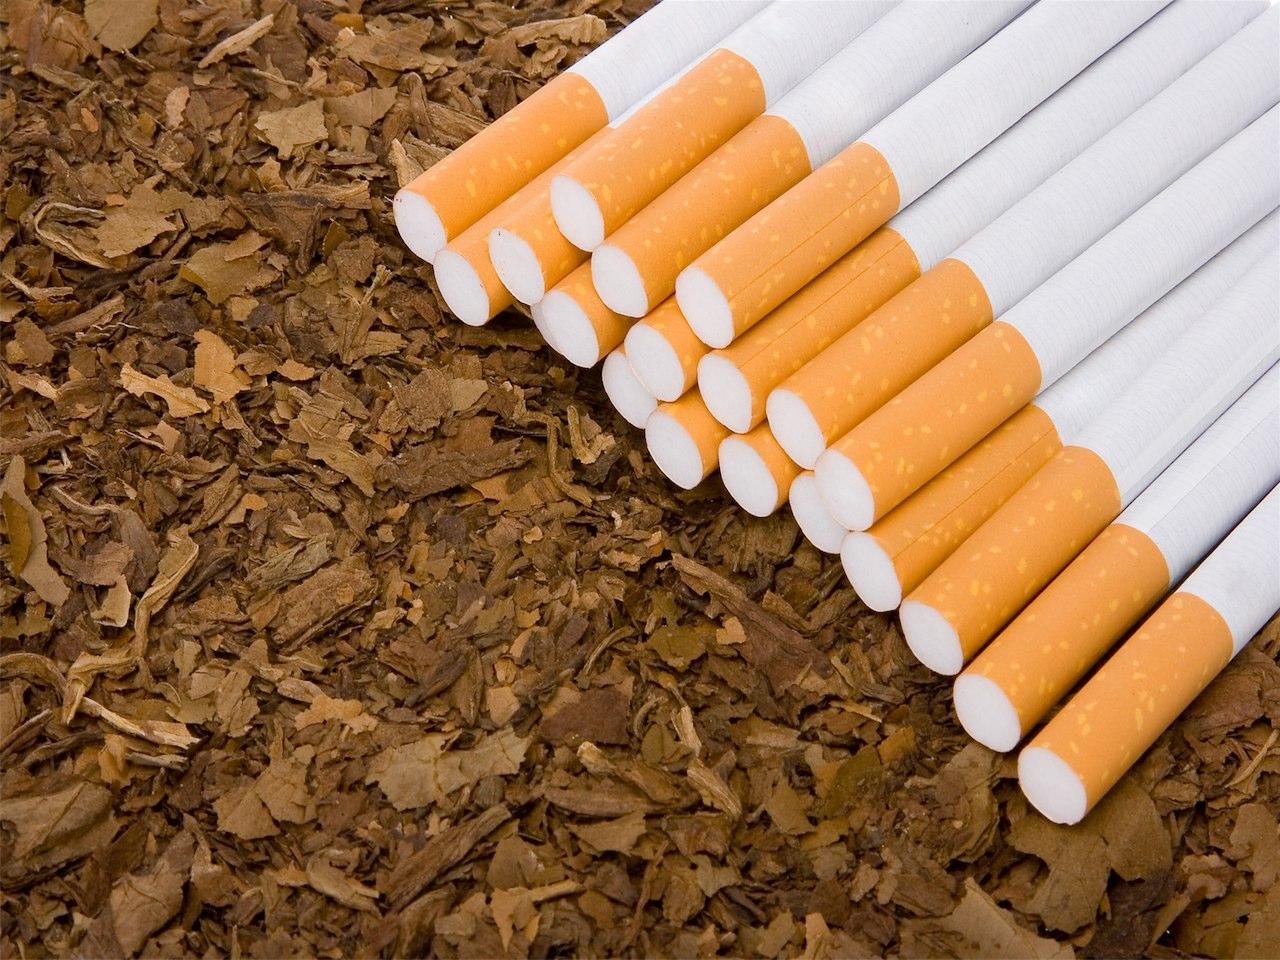 Survey: Tobacco contraband scale 13 percent in Azerbaijan